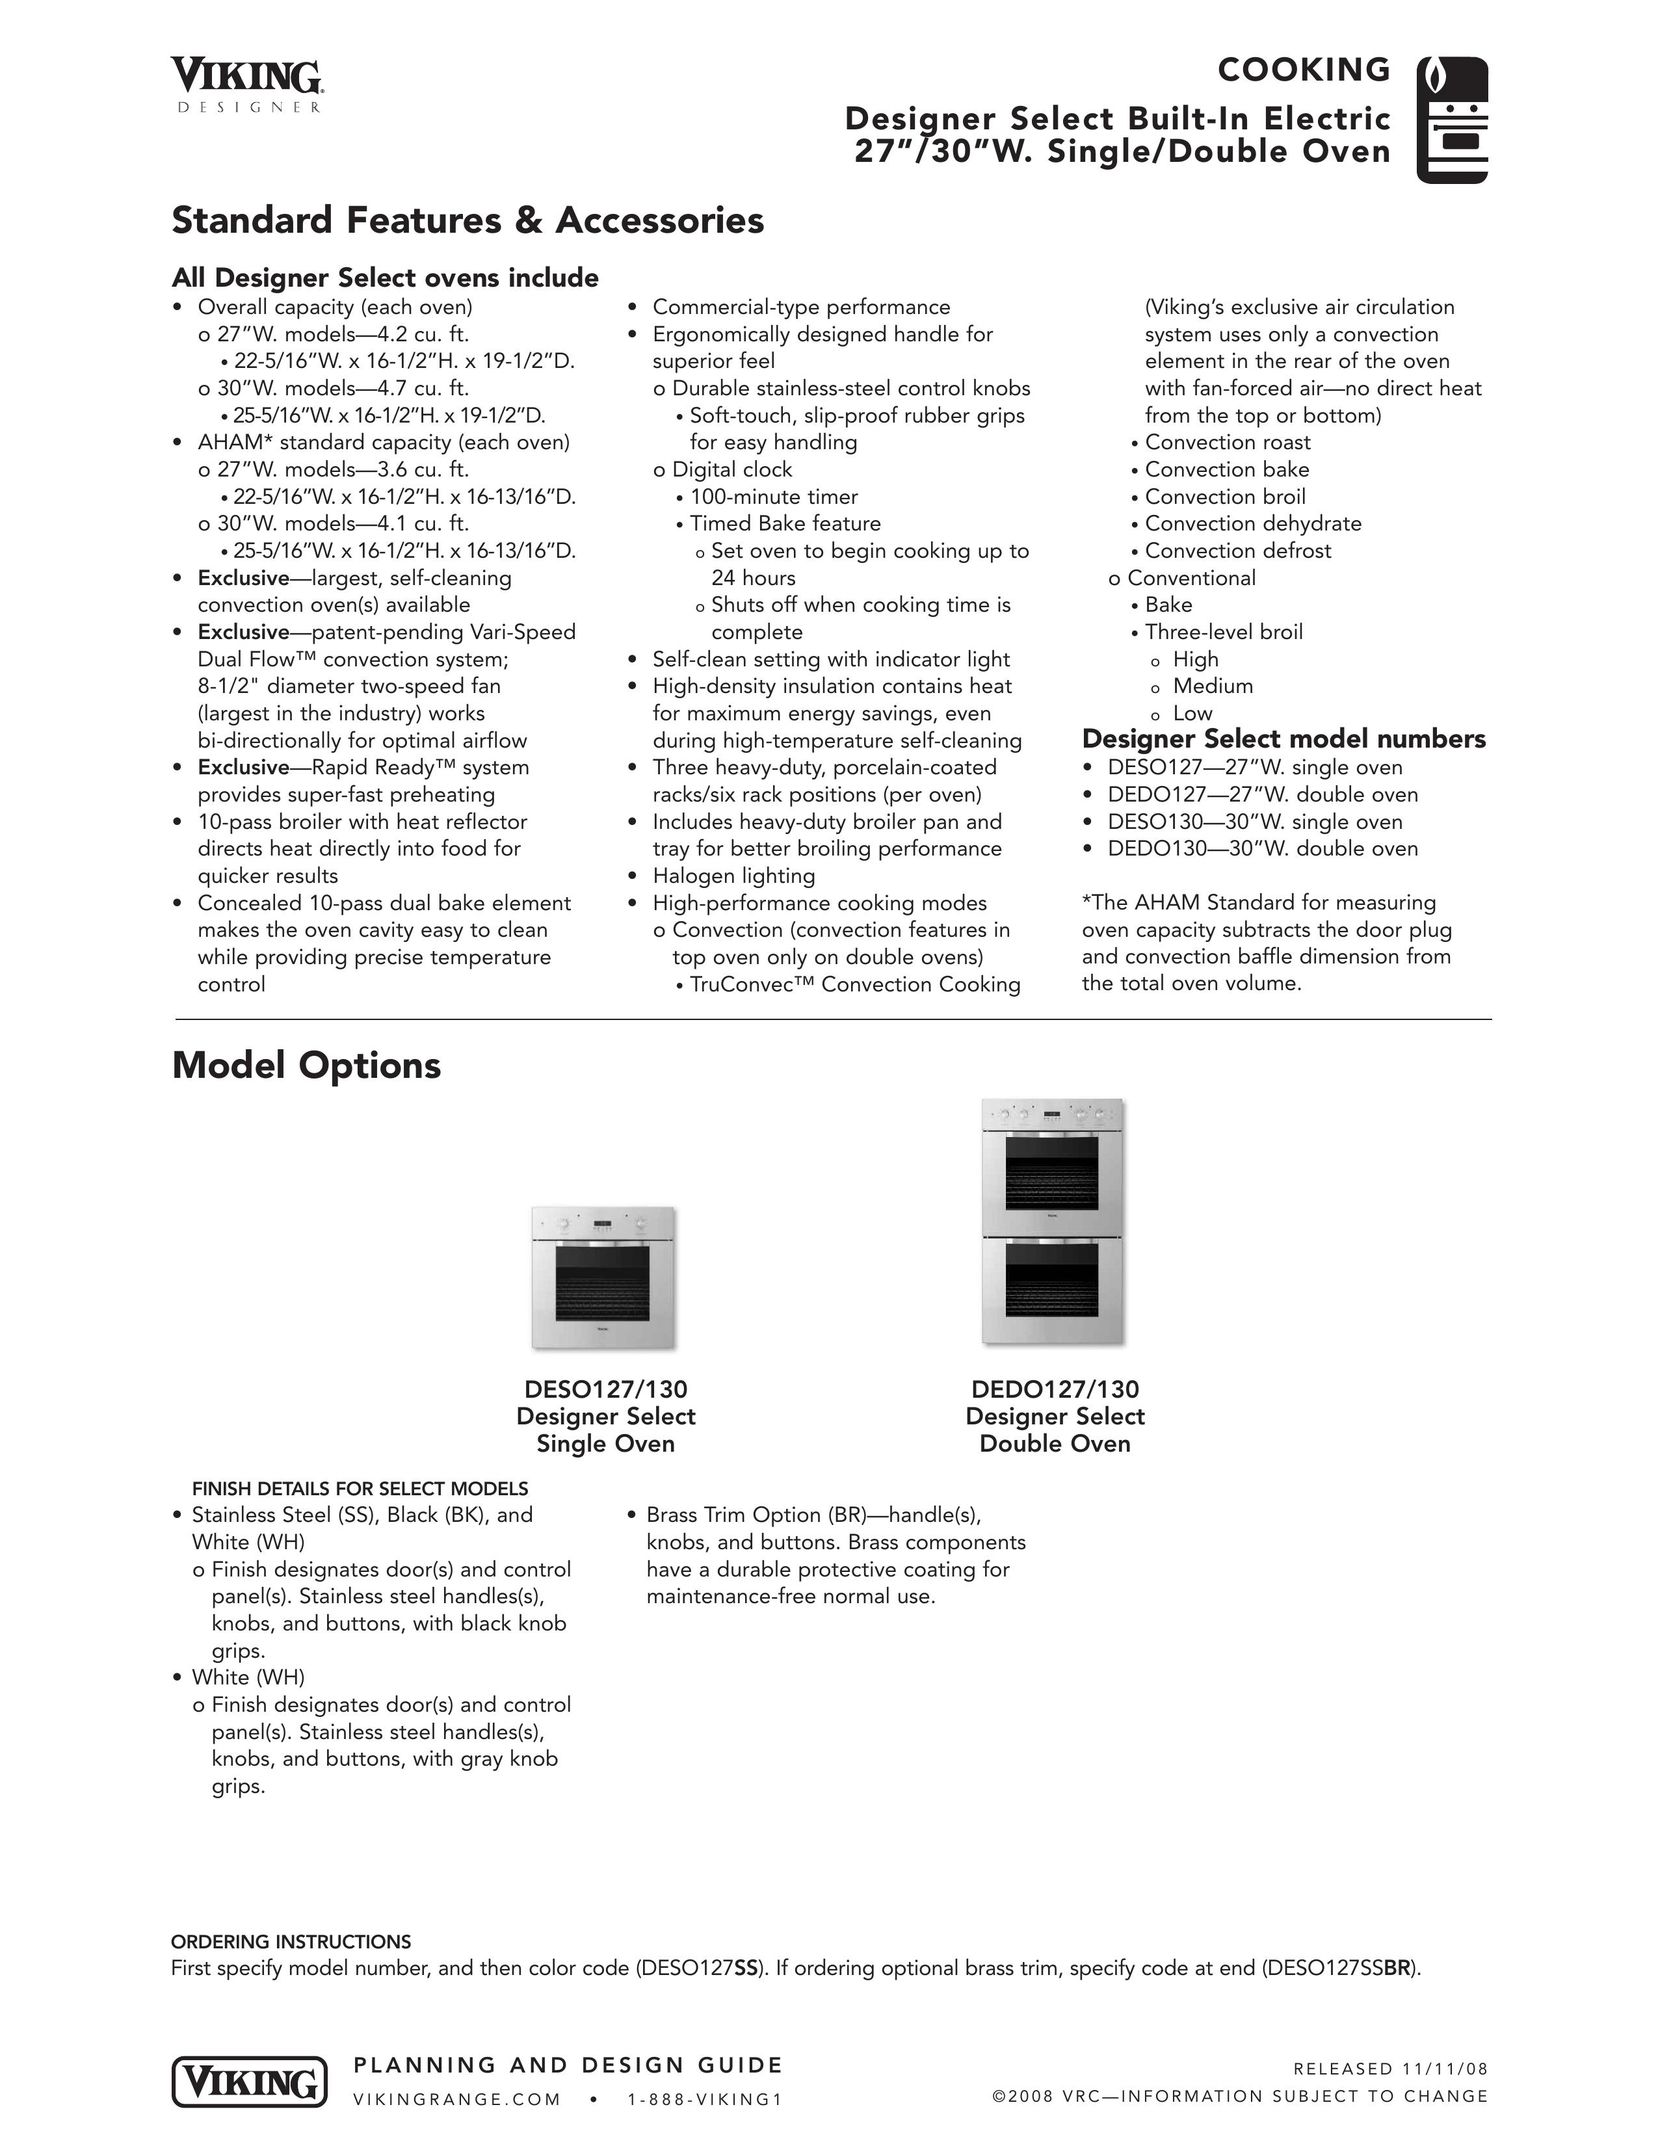 Viking DEDO127/130 Oven User Manual